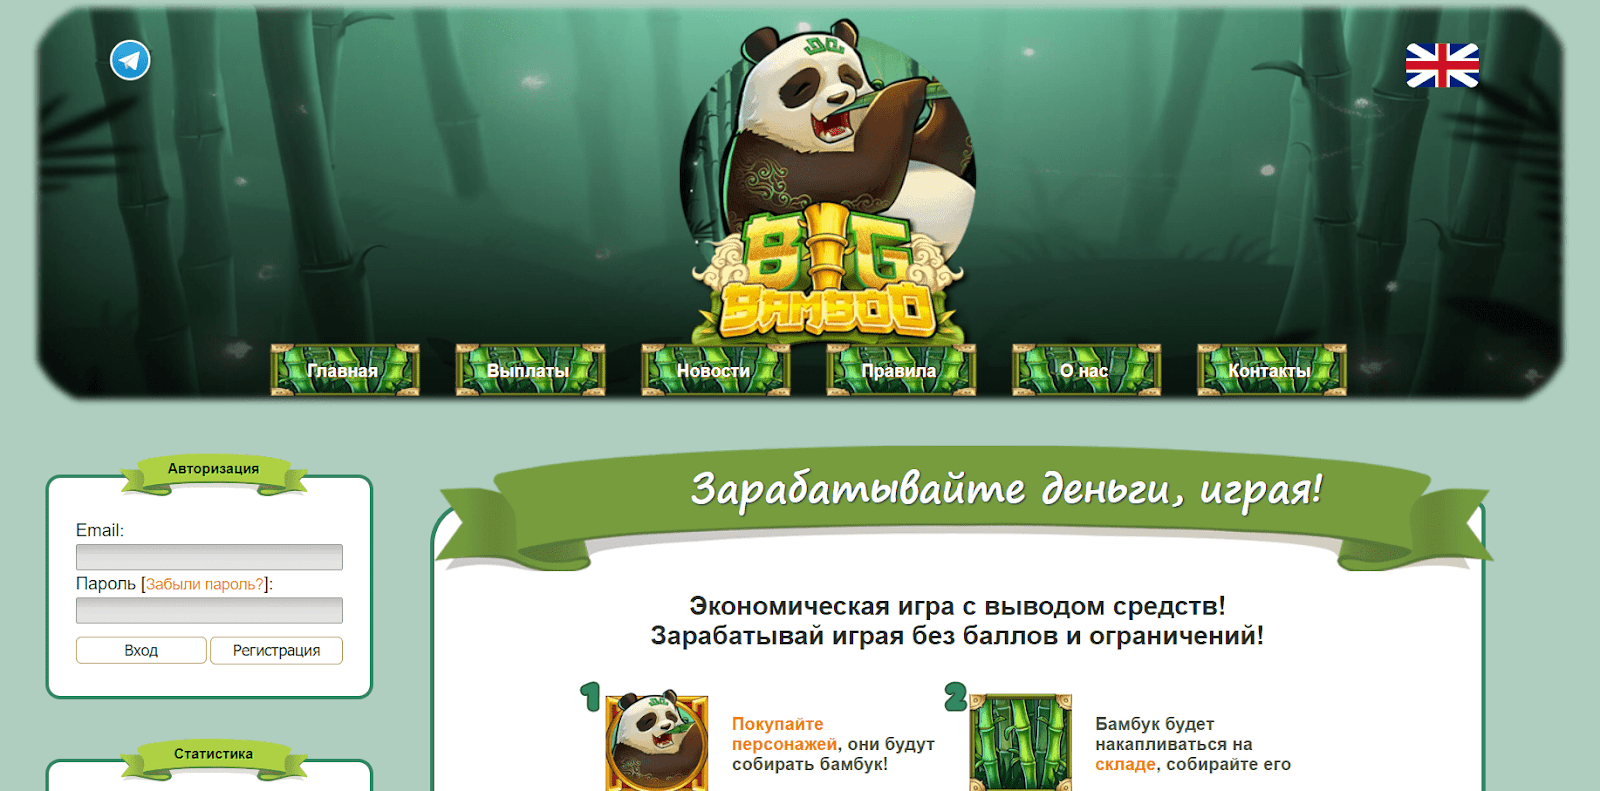 Big bamboo в рублях play bigbamboo com. Big Bamboo слот. Bambook games. Играть в бамбуки. Игры в которых можно заработать реальные деньги 2023.